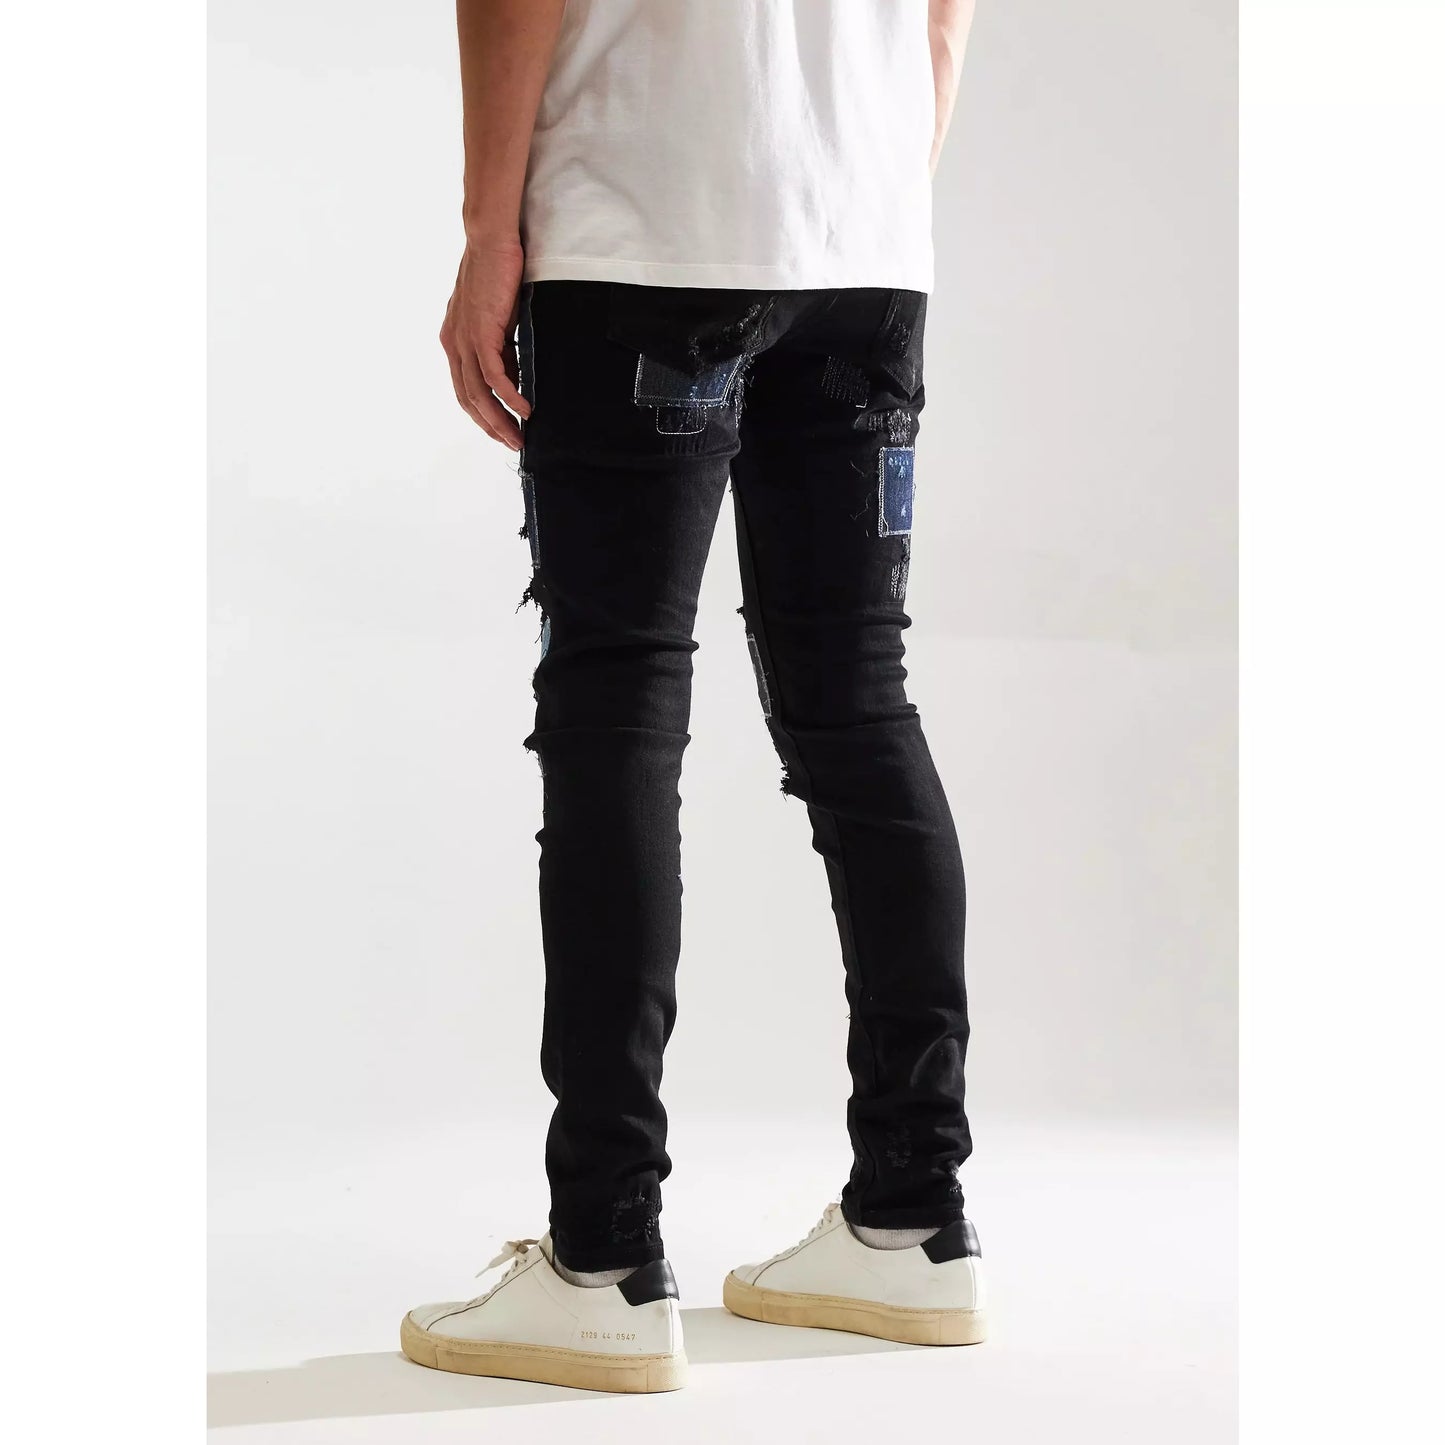 Embellish Black Patchwork Silas Denim Jeans (EMBF221-107)